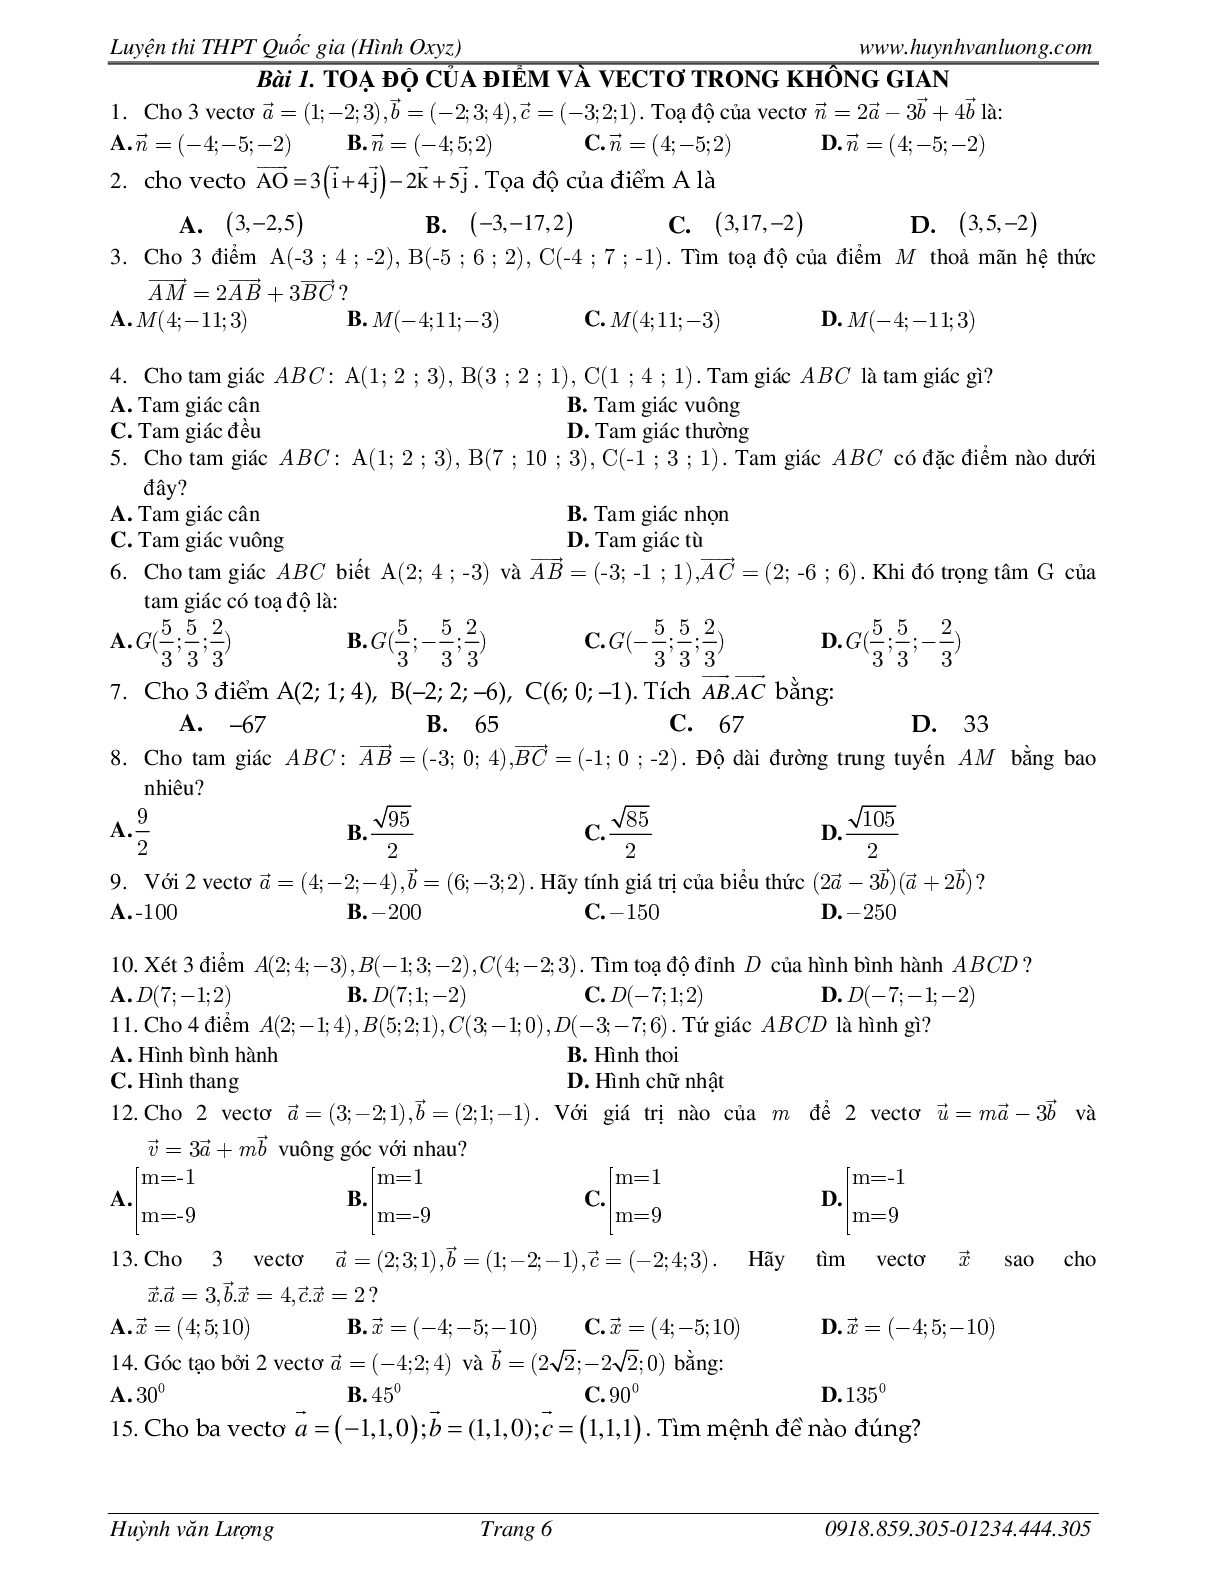 236 Bài tập trắc nghiệm hình học Oxyz môn Toán lớp 12 năm 2023 (trang 6)